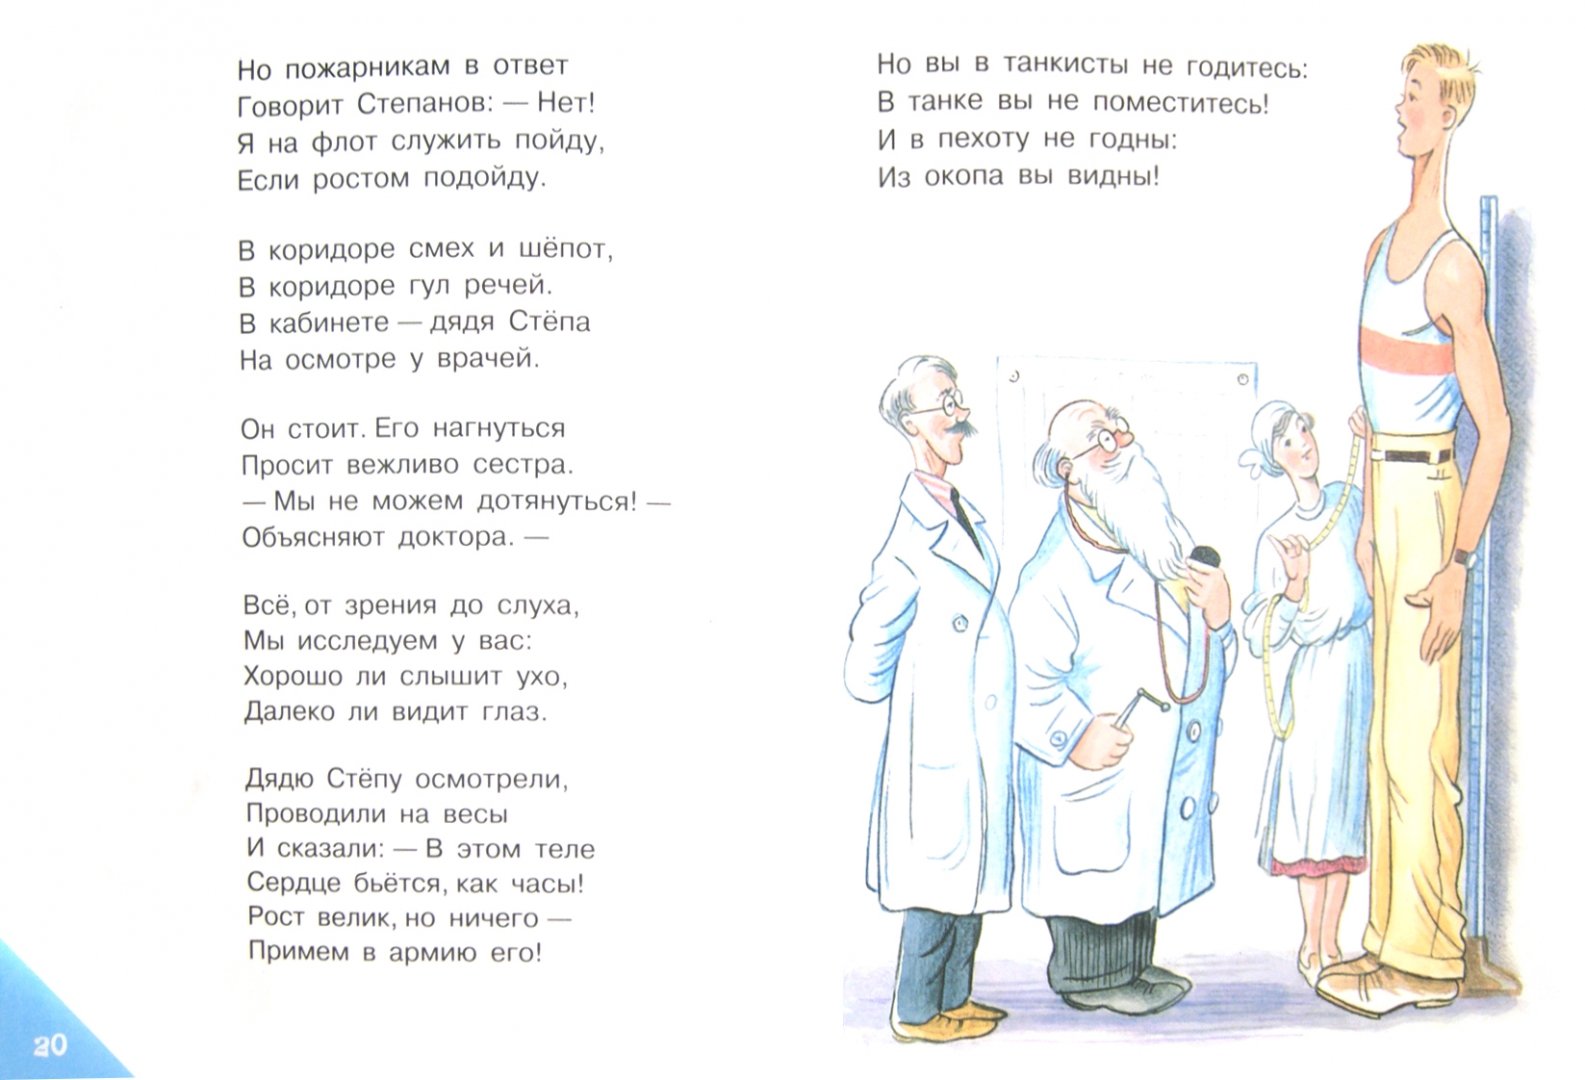 Иллюстрация 1 из 13 для Стихи - Сергей Михалков | Лабиринт - книги. Источник: Лабиринт